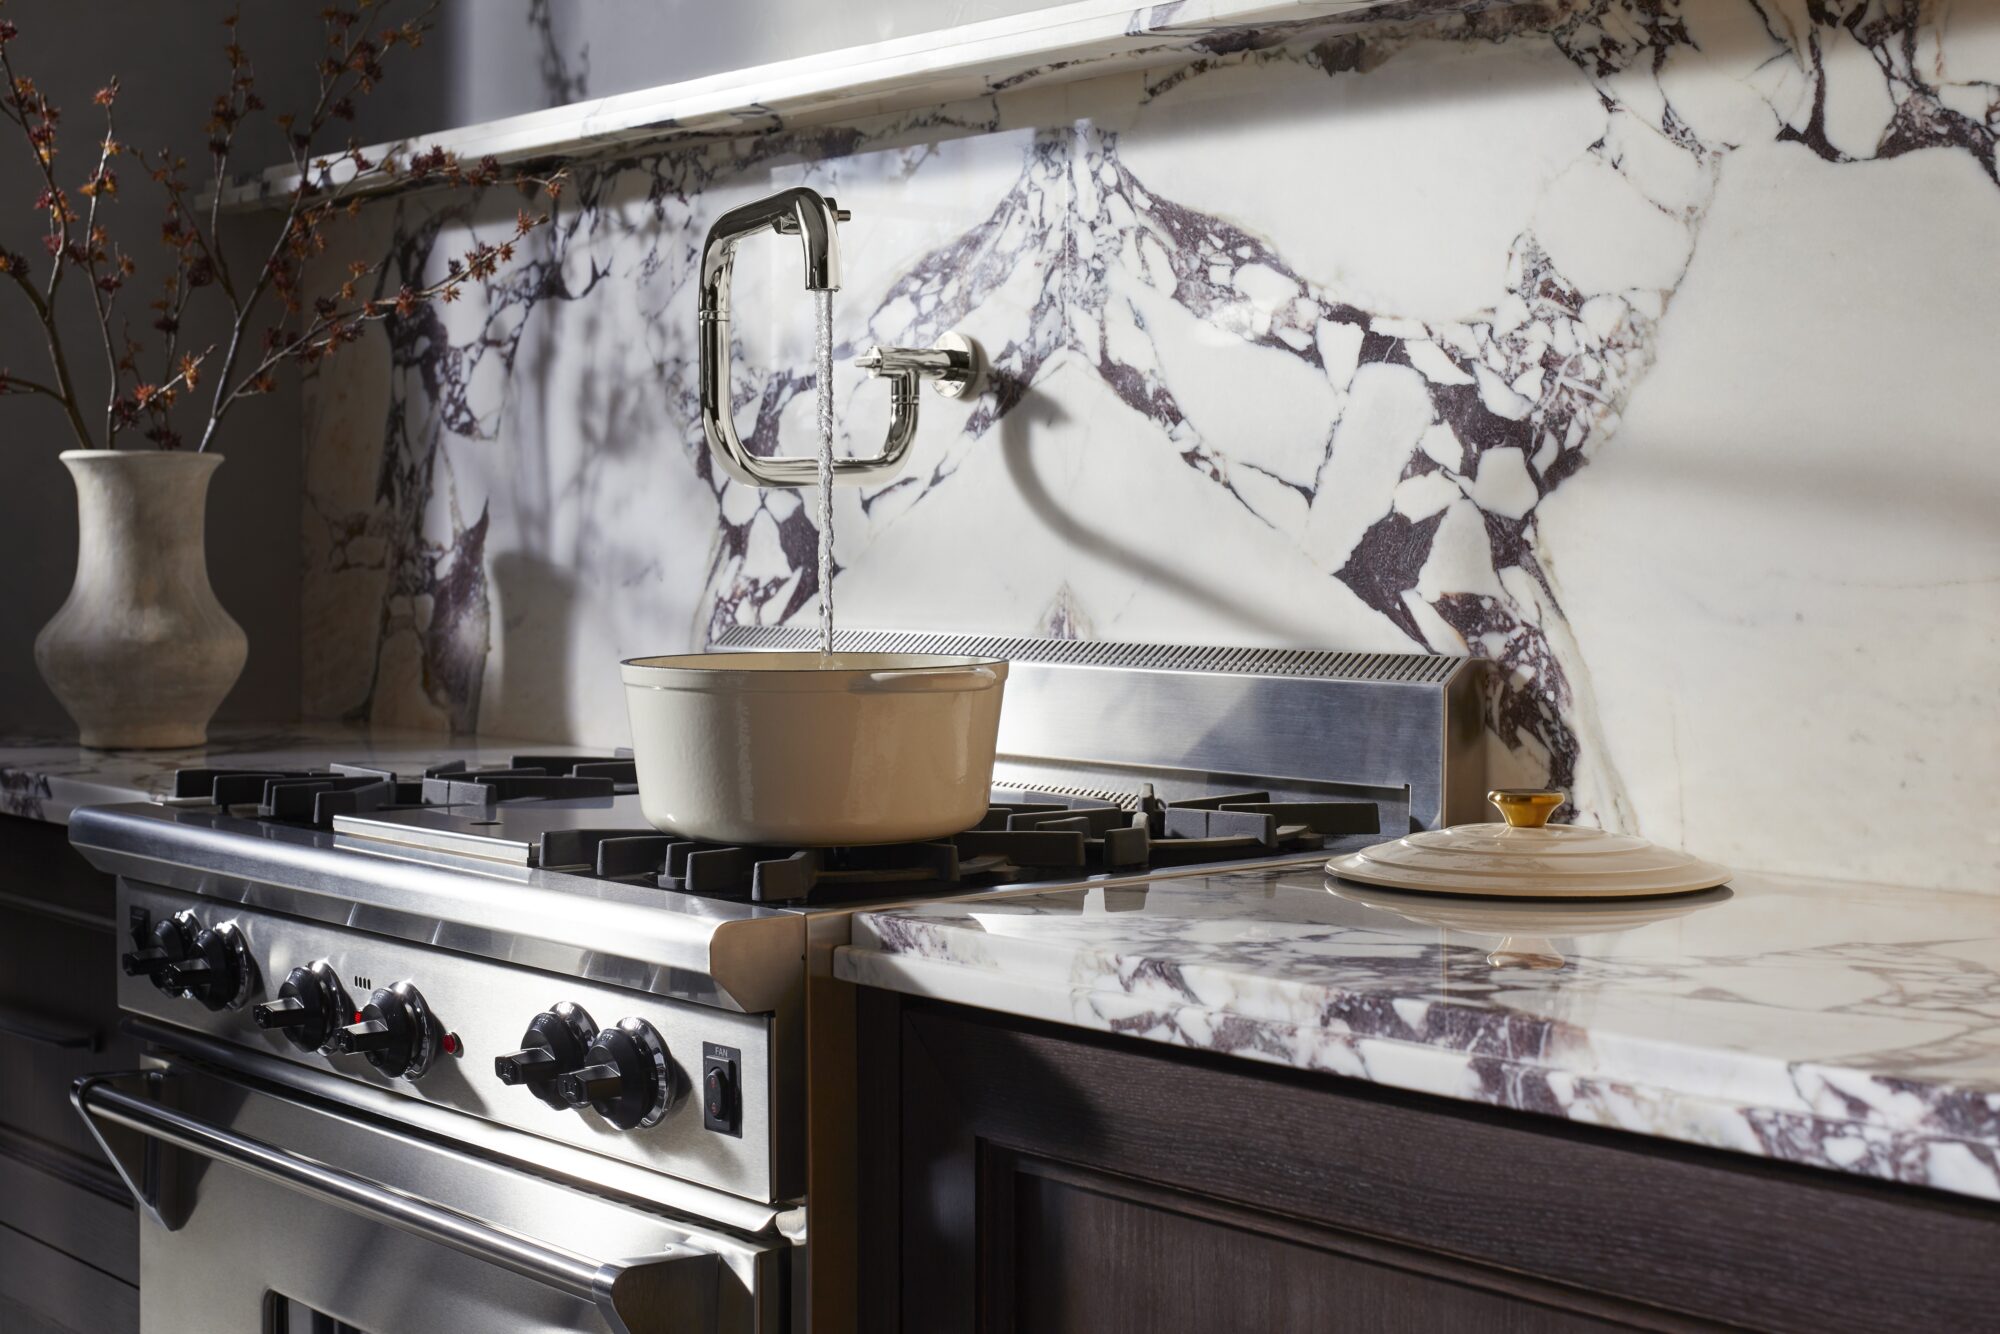 Kohler kitchen faucet against a marble backsplash